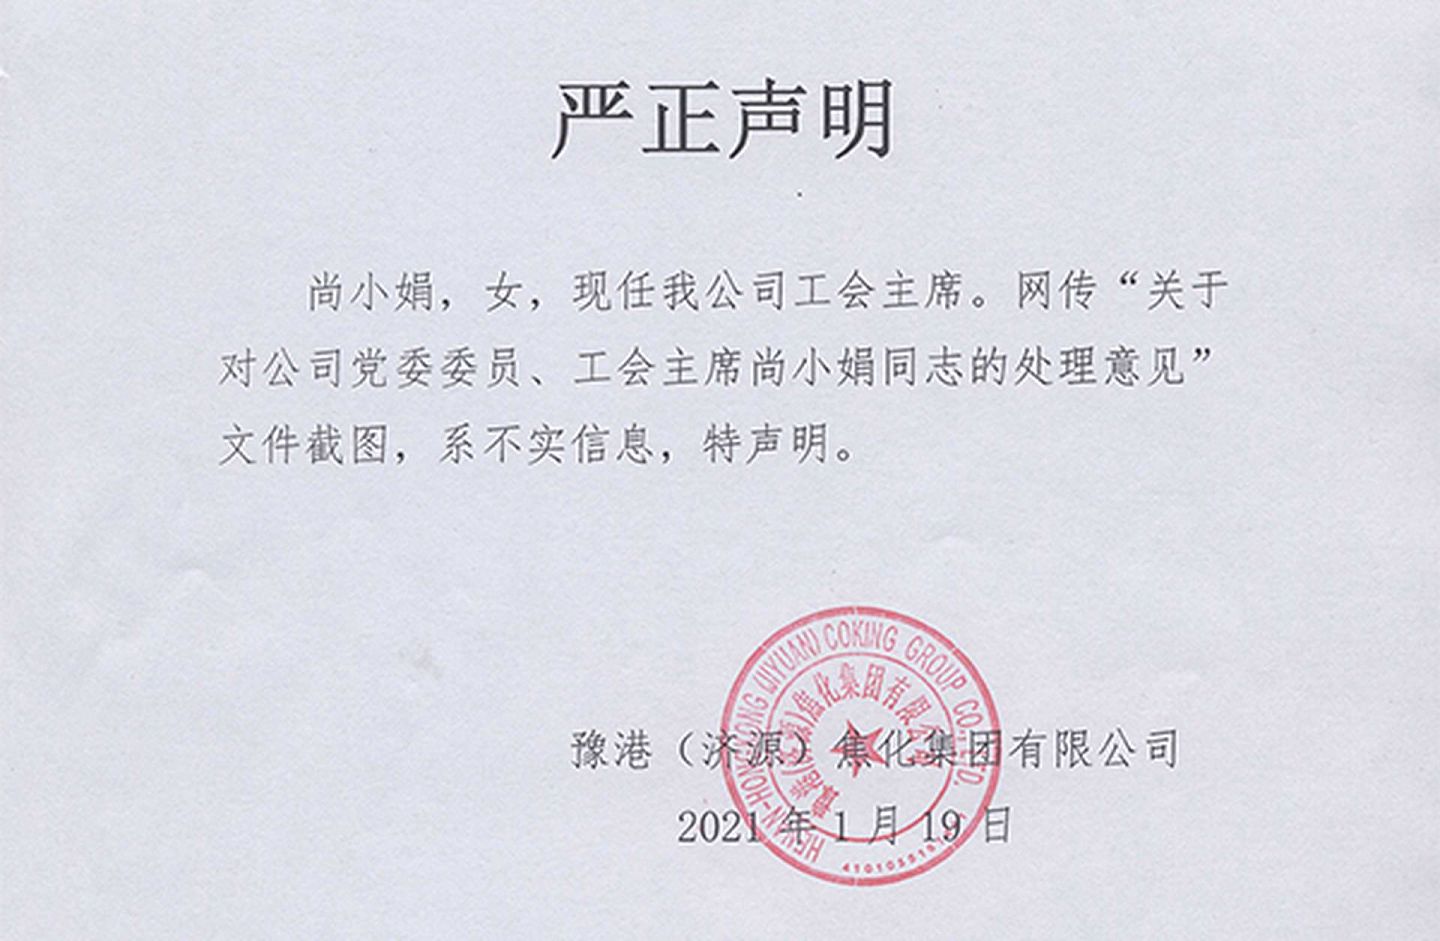 2021年1月19日，豫港焦化就网传处理尚小娟的文件图片发表声明。(济源网报道截图）